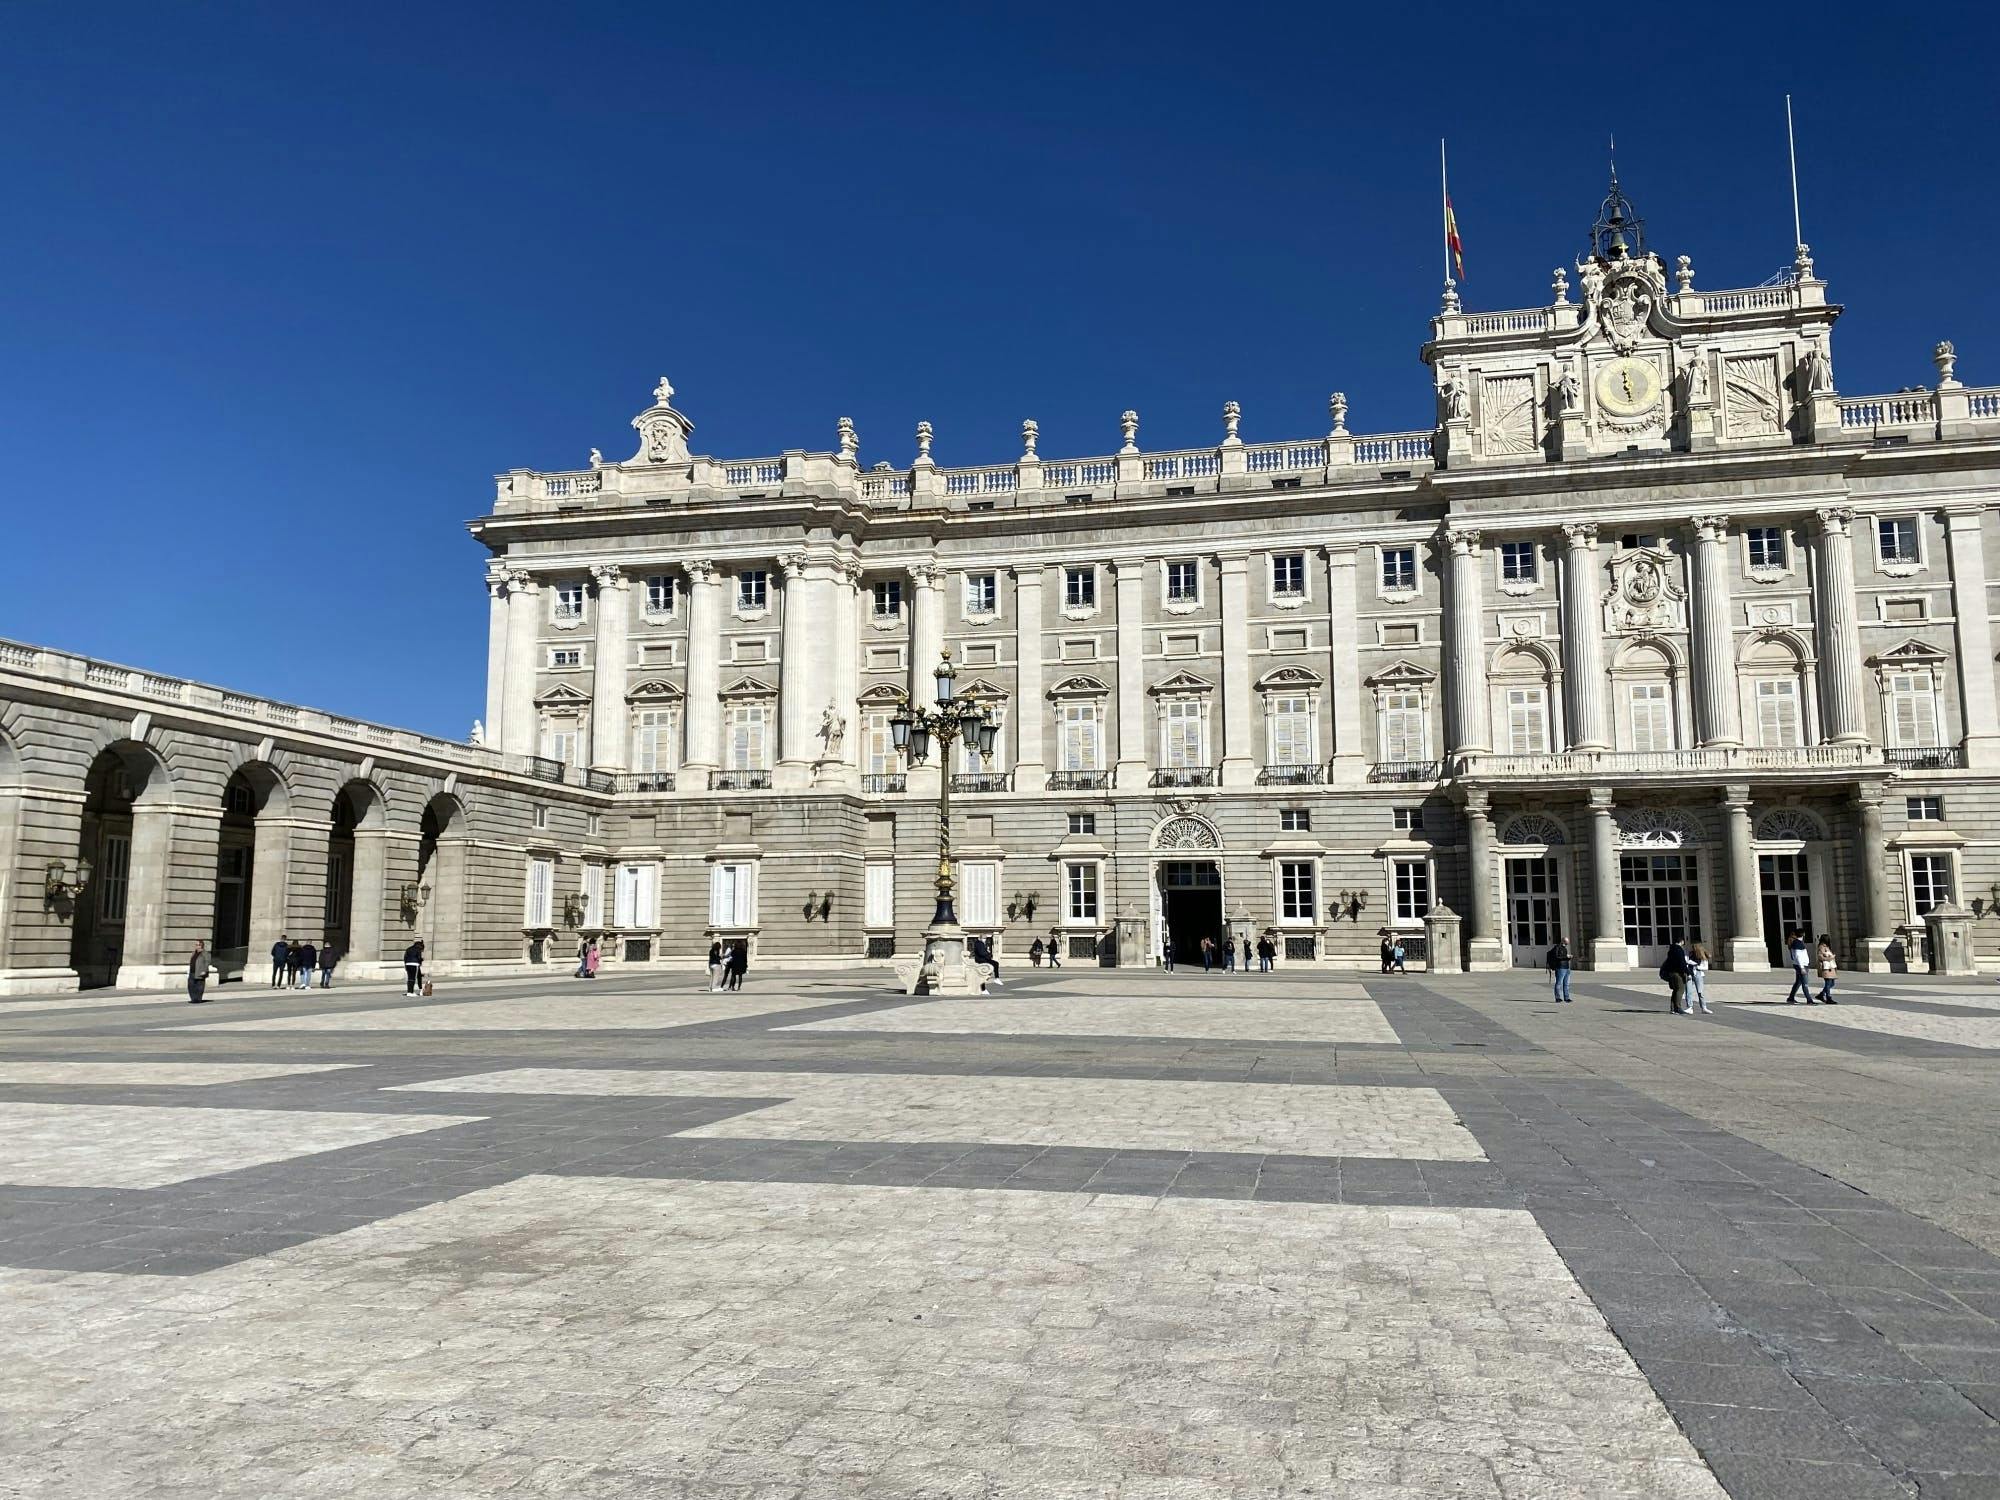 Galeria das Coleções Reais e visita guiada ao Palácio Real em inglês